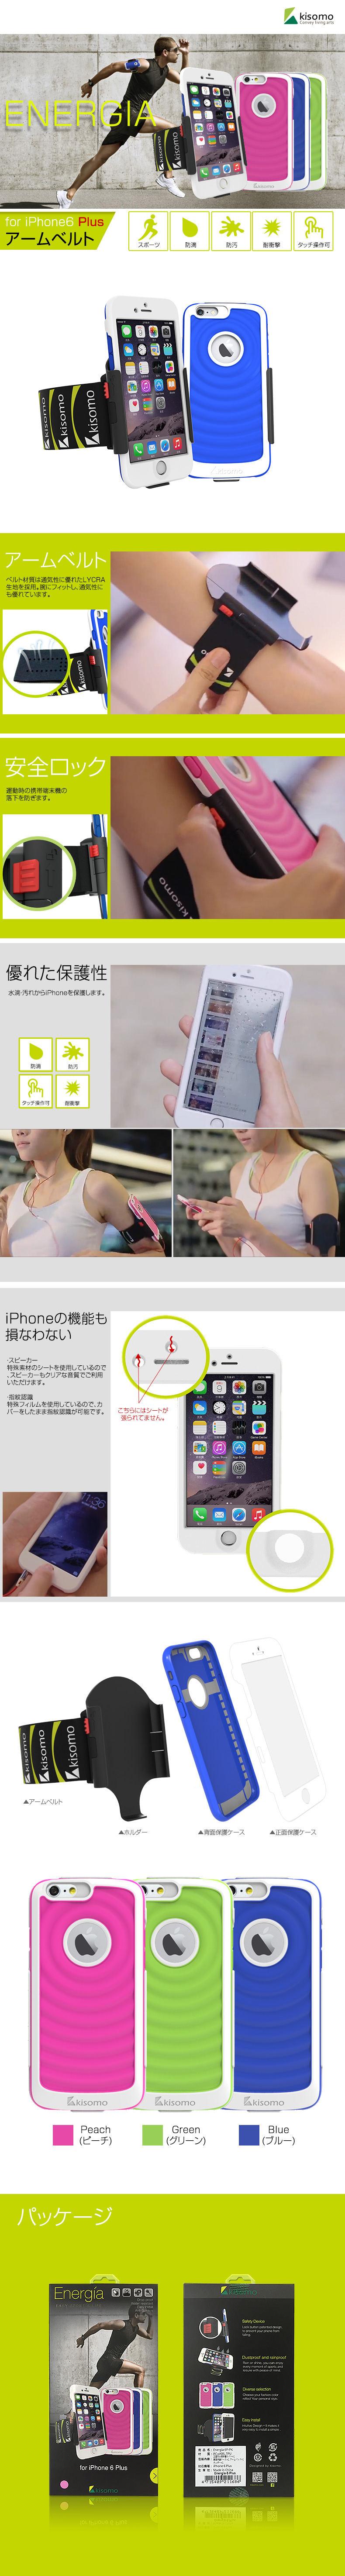 商品詳細-iPhone6 PLUS専用ケース